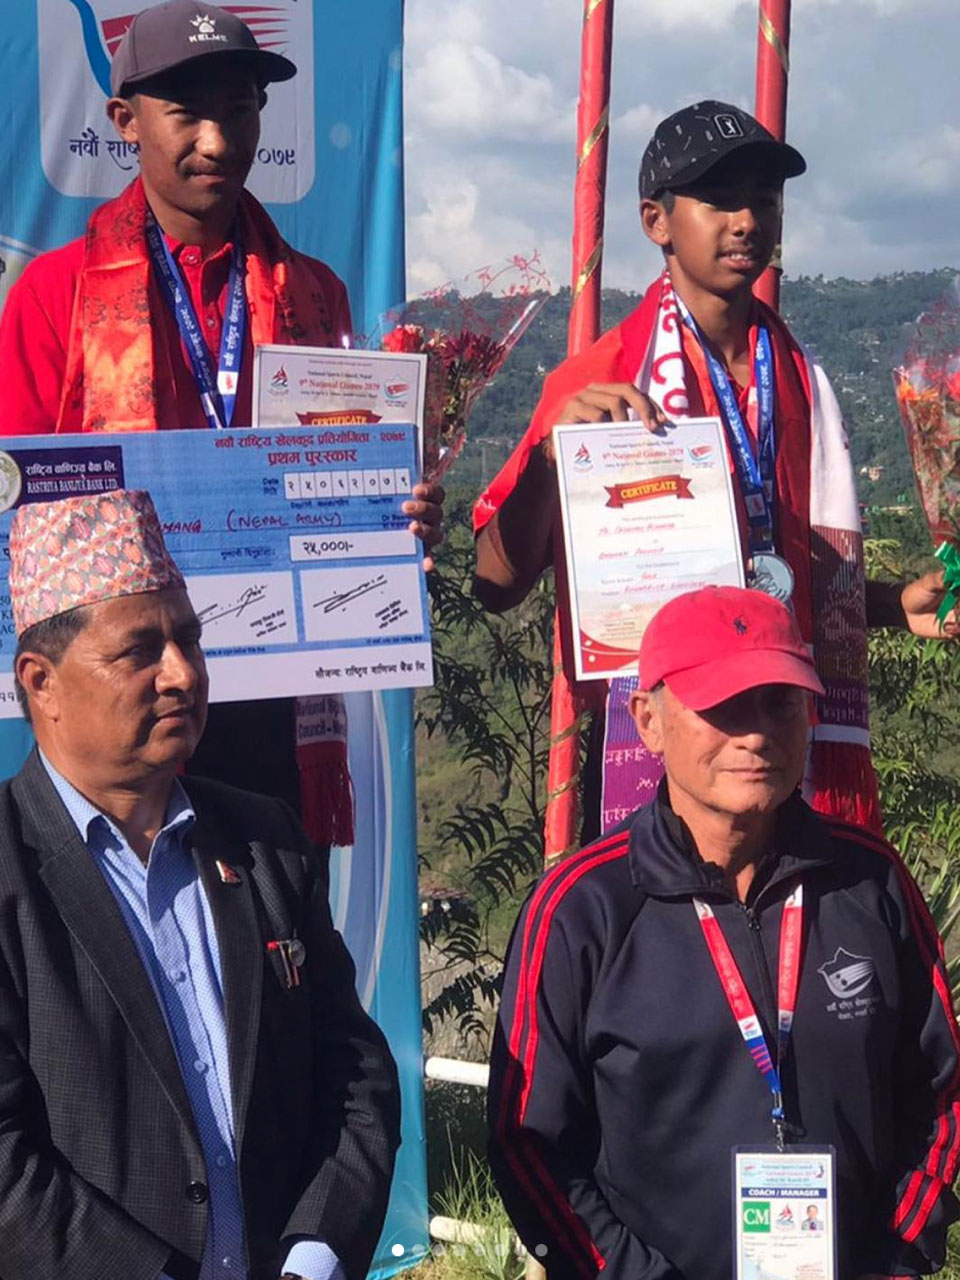 Subhash Tamang & Sadbhav Acharya wins the Gold & Silver